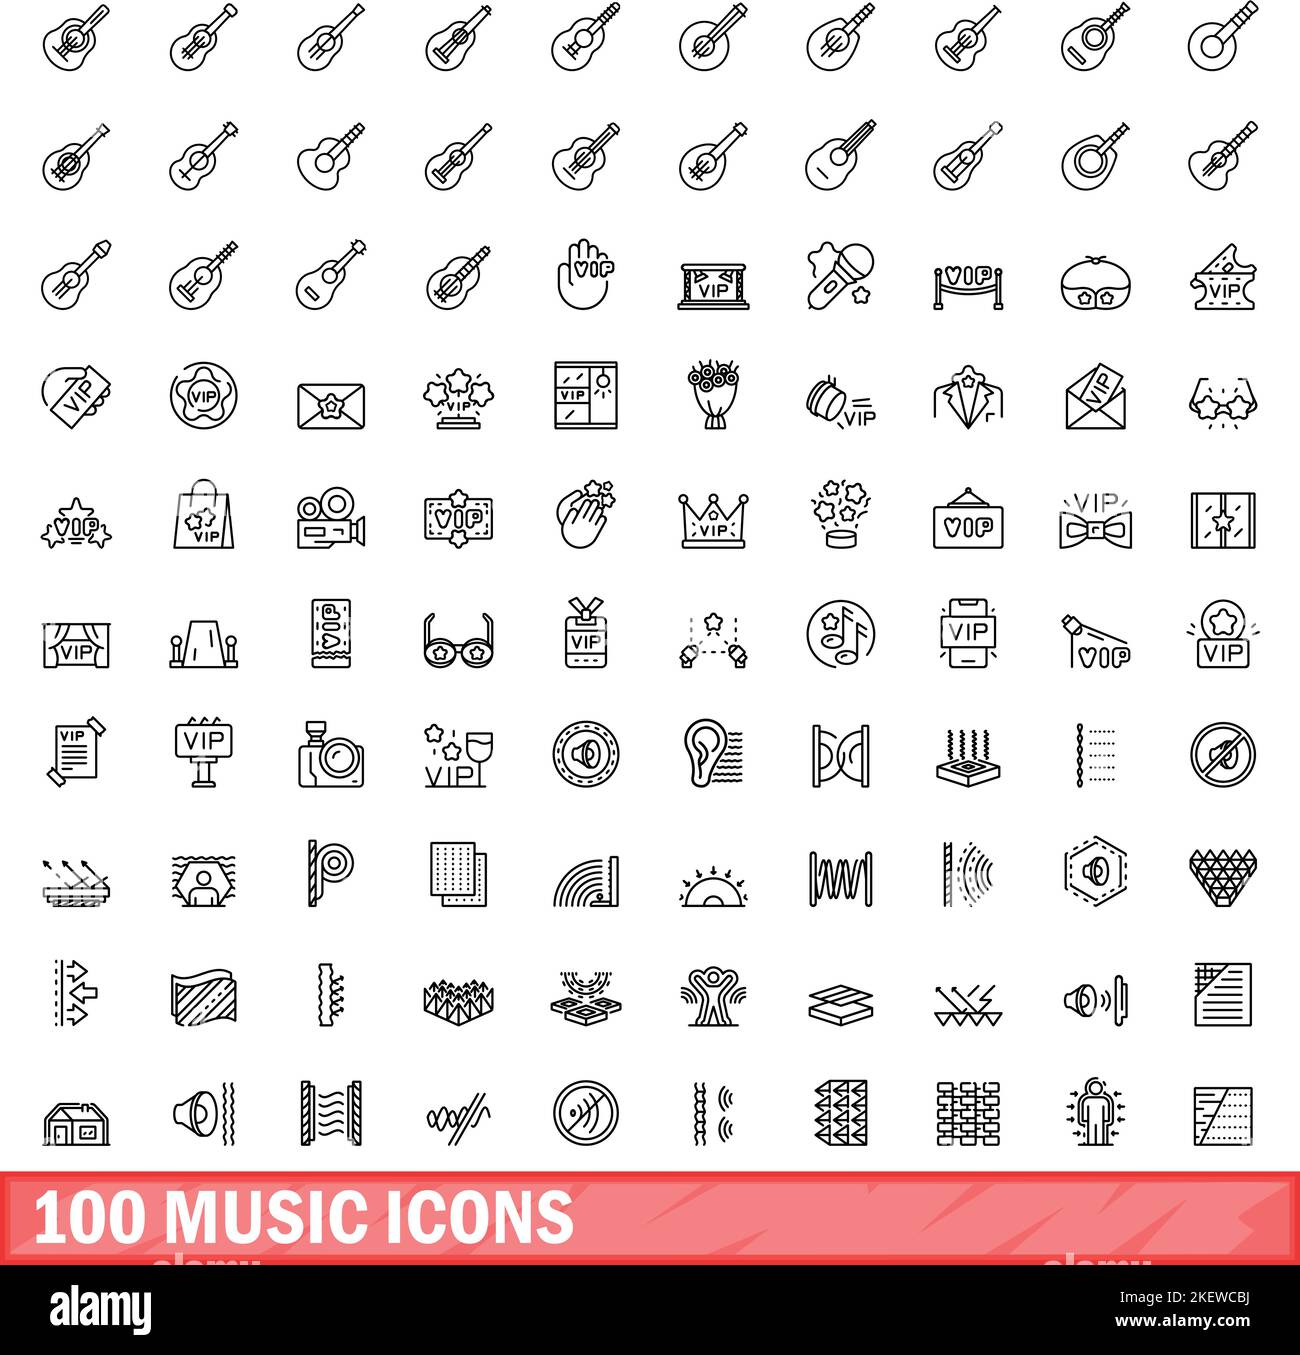 100 icone musicali impostate. Illustrazione di 100 icone musicali set vettoriale isolato su sfondo bianco Illustrazione Vettoriale